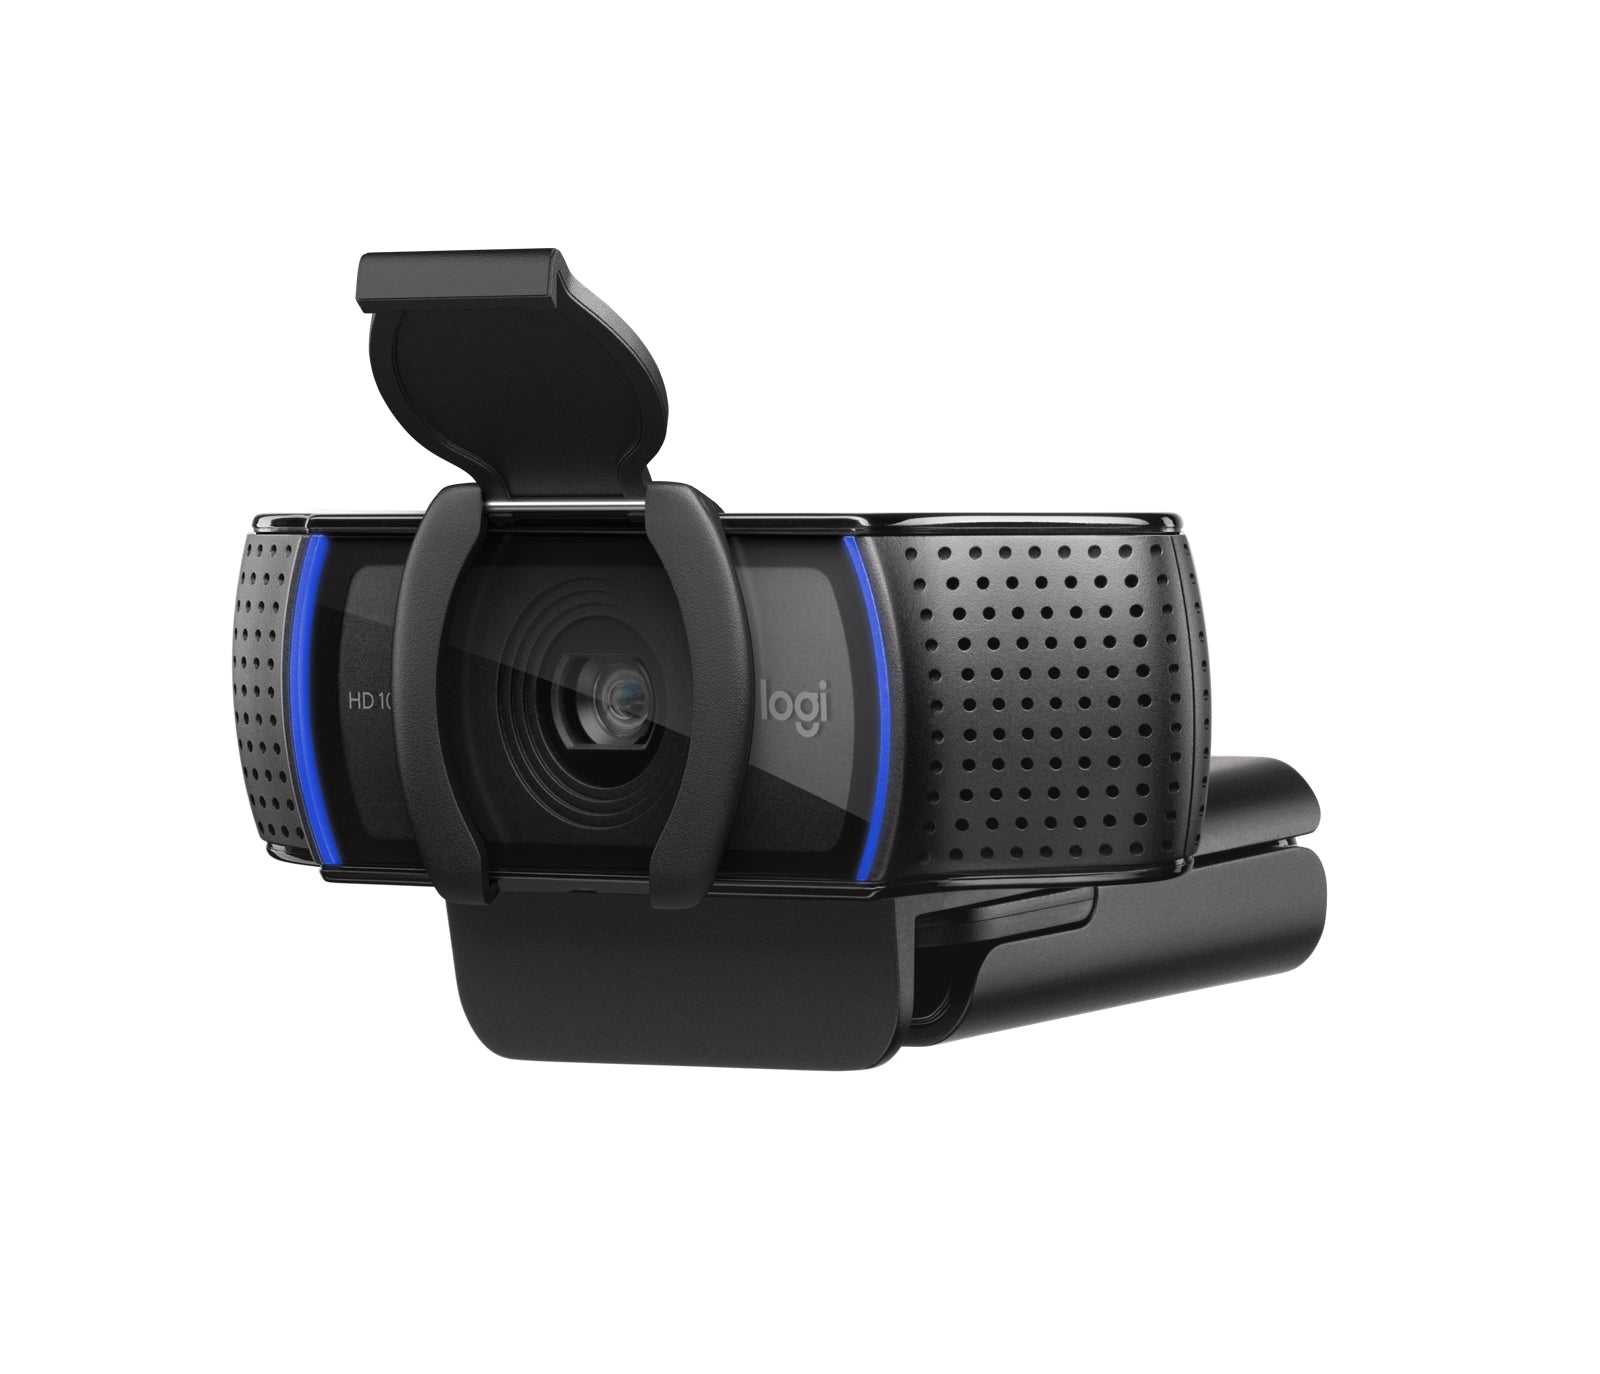 Webcam Logitech C920S 720P Vídeo Full Hd 1080P Más Rápido Y Fluido Videoconferencias Audio Estéreo Natural (Dos Micrófonos)